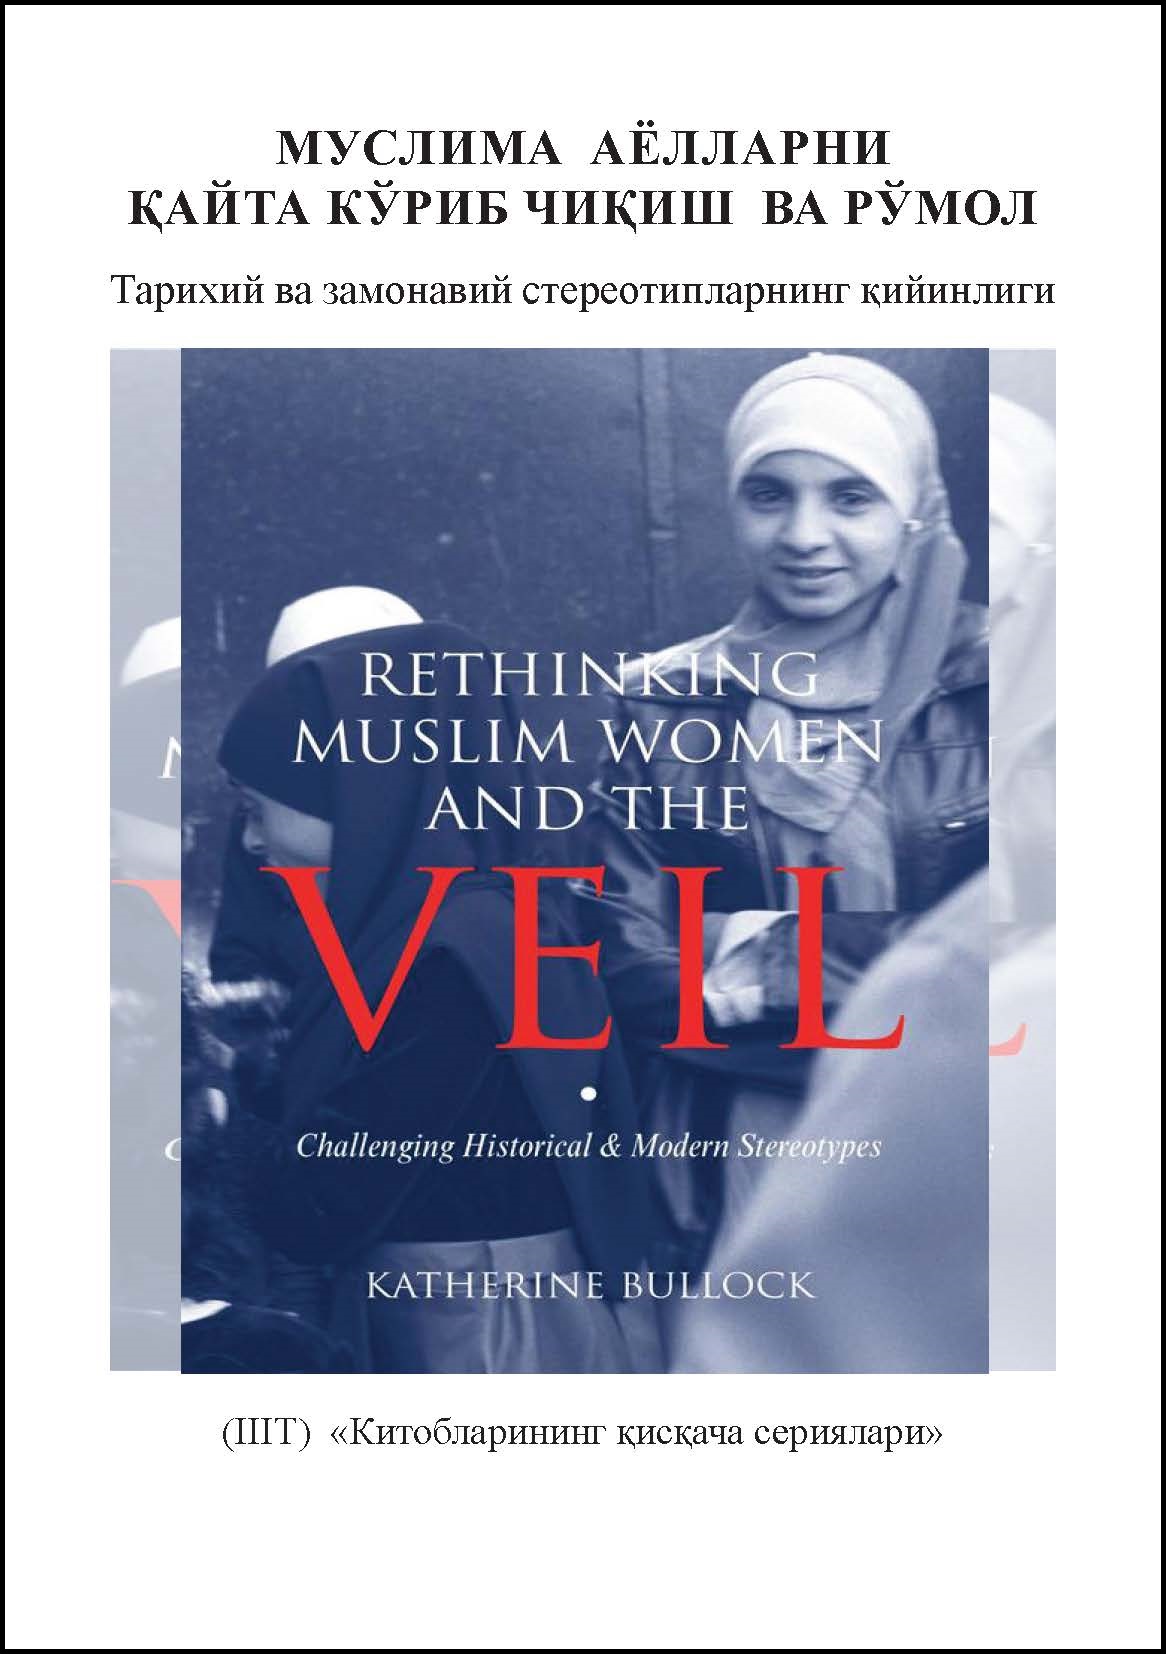 Uzbek: Китобларининг қисқача сериялари: Муслима аёлларни қайта кўриб чиқиш ва рўмол: тарихий ва замонавийстереотипларнинг қийинлиги (Book-in-Brief: Rethinking Muslim Women and the Veil: Challenging Historical & Modern Stereotypes)